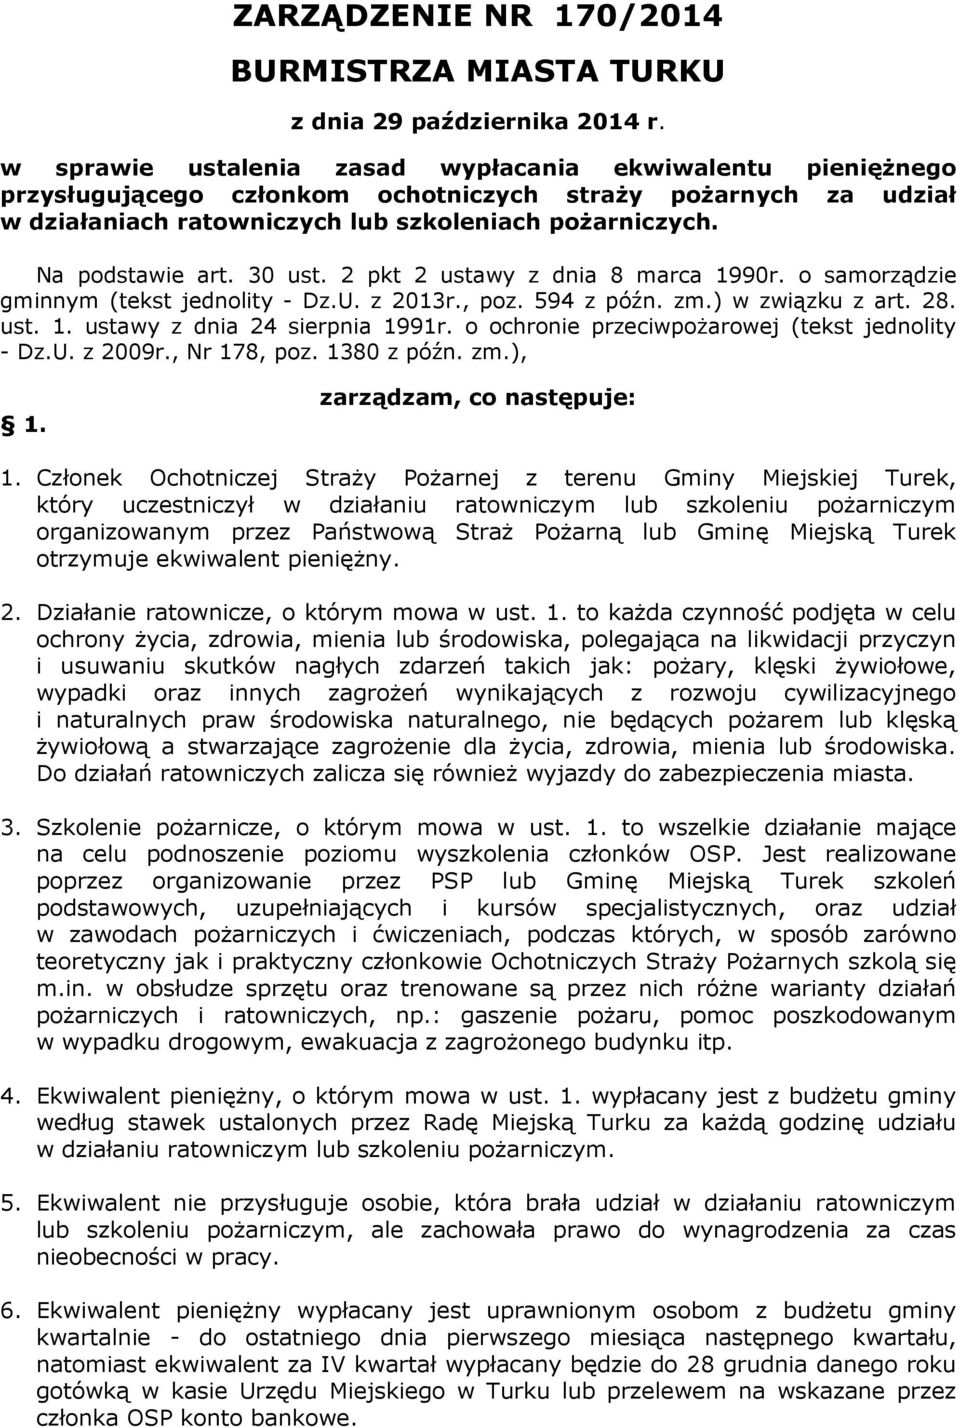 30 ust. 2 pkt 2 ustawy z dnia 8 marca 1990r. o samorządzie gminnym (tekst jednolity - Dz.U. z 2013r., poz. 594 z późn. zm.) w związku z art. 28. ust. 1. ustawy z dnia 24 sierpnia 1991r.